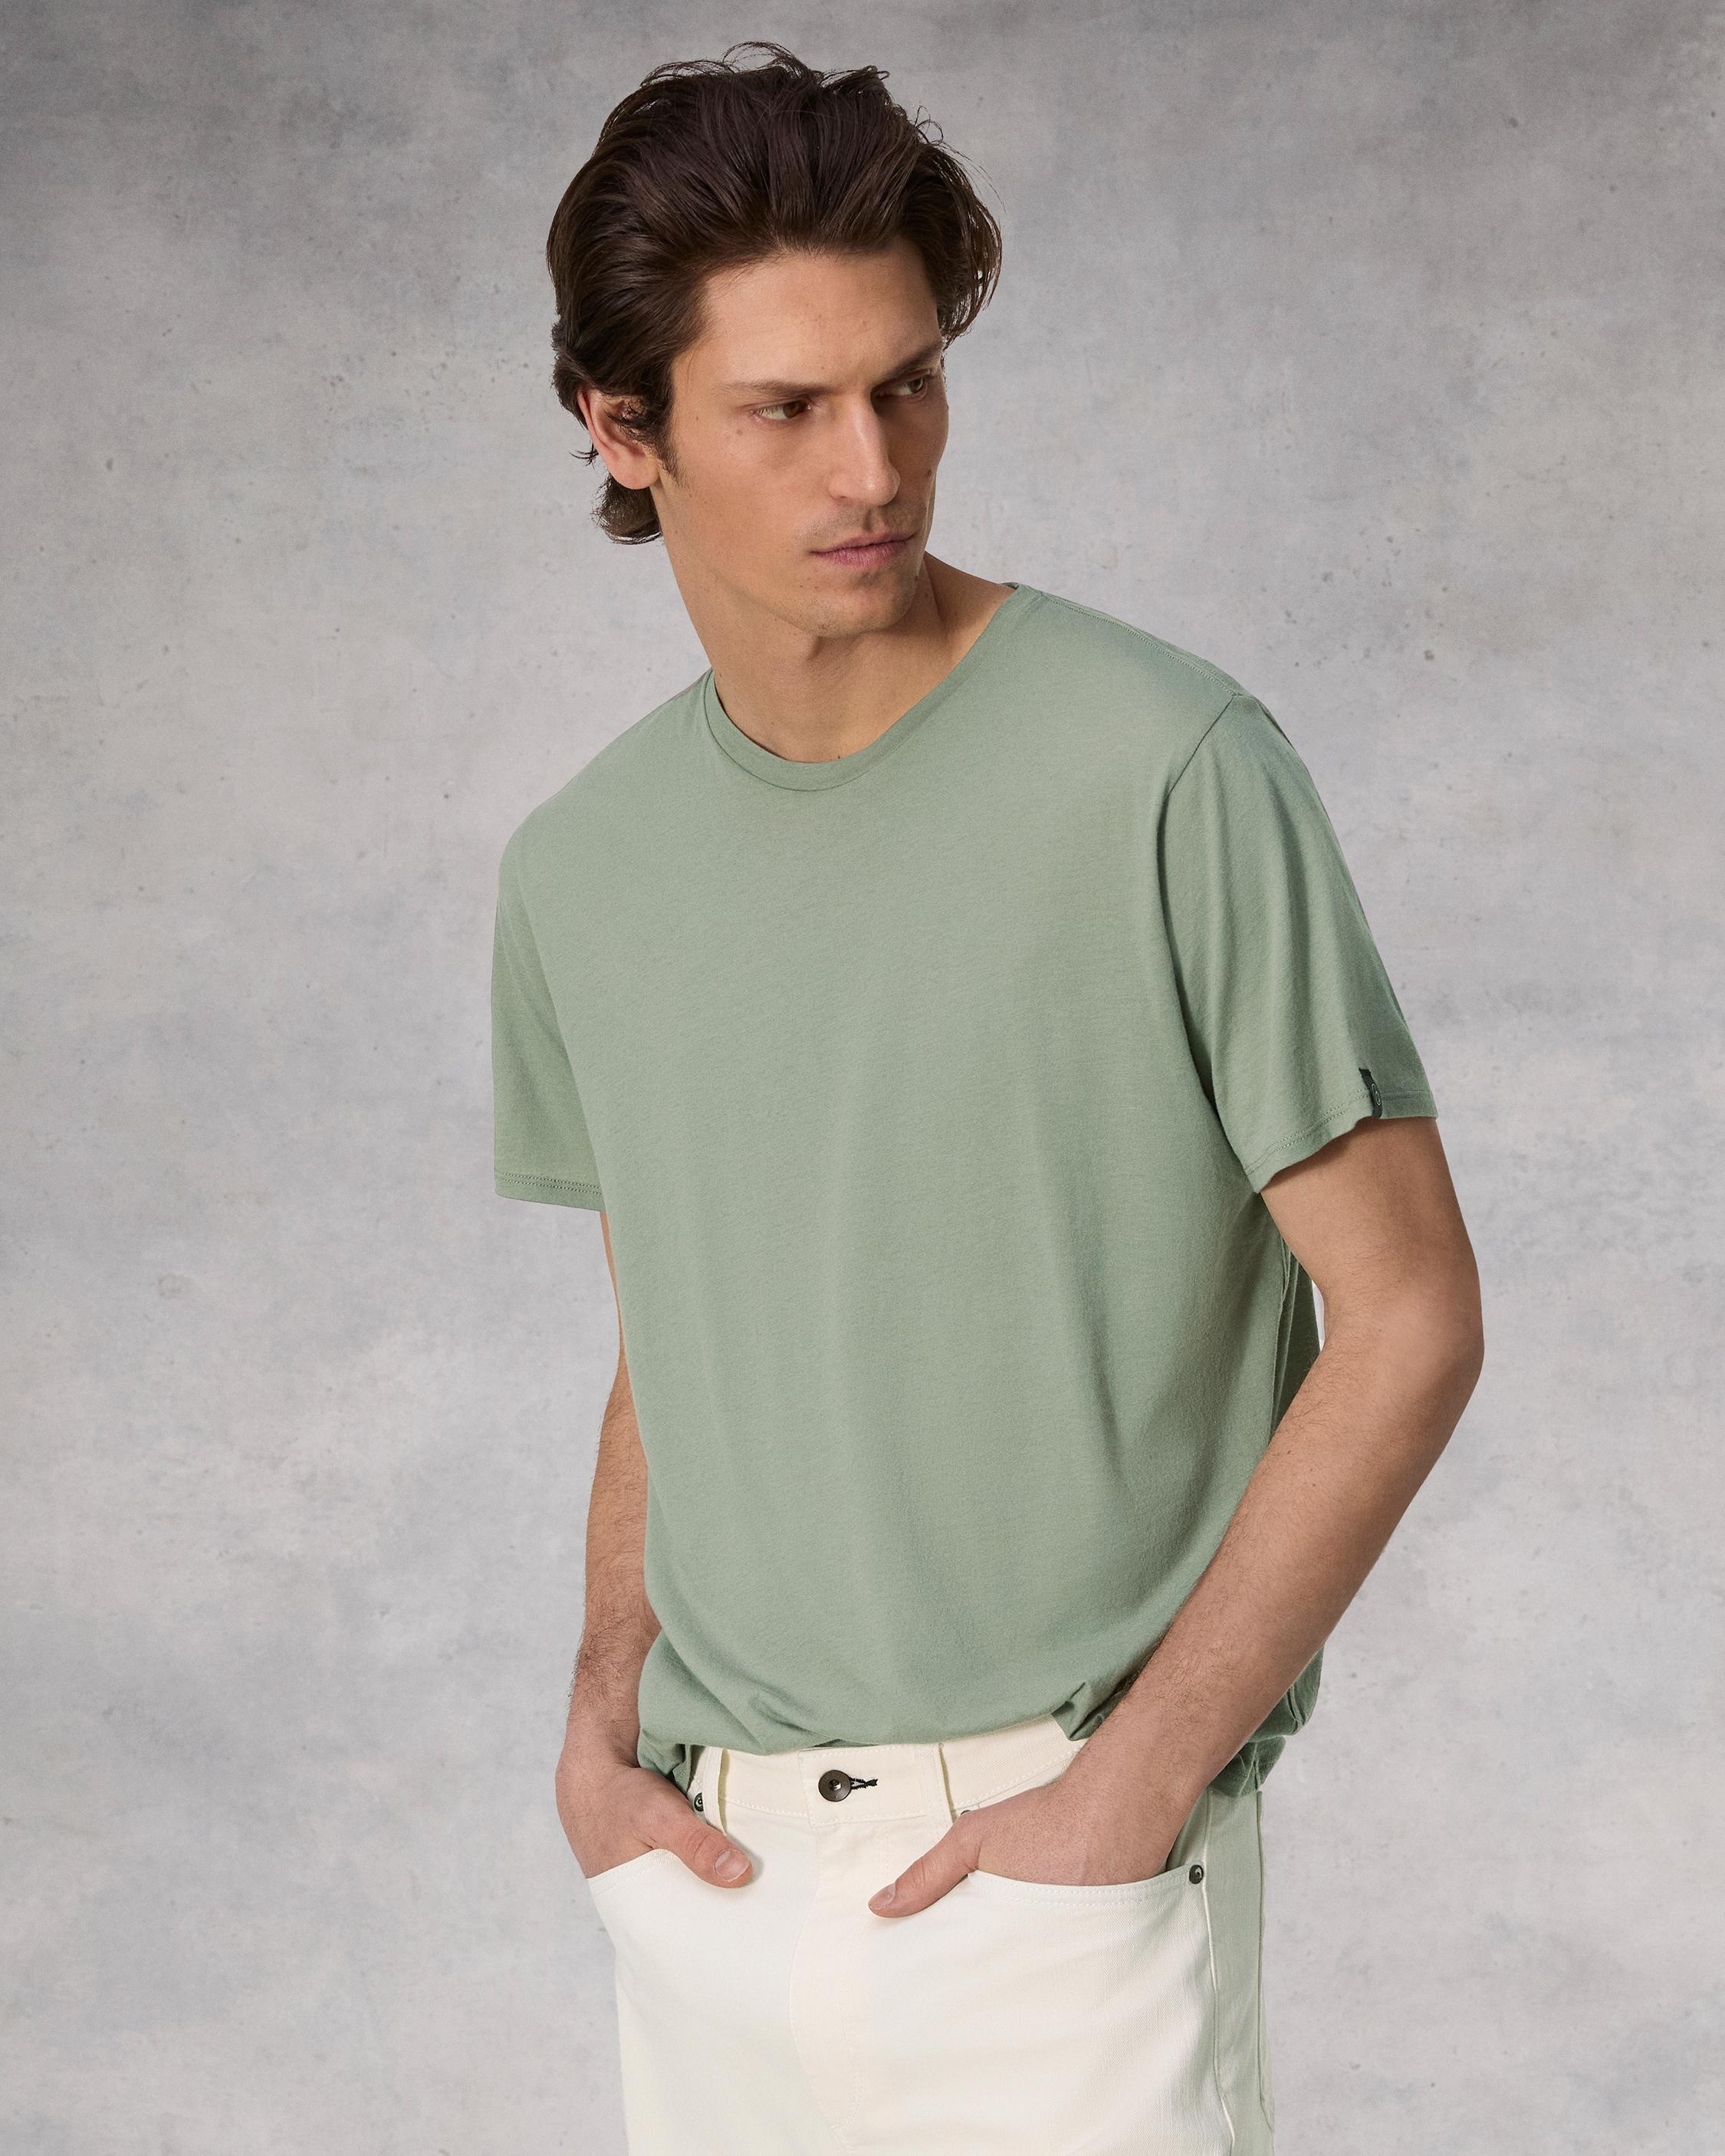 Zero Gravity Classic Tee
Cotton T-Shirt - 2